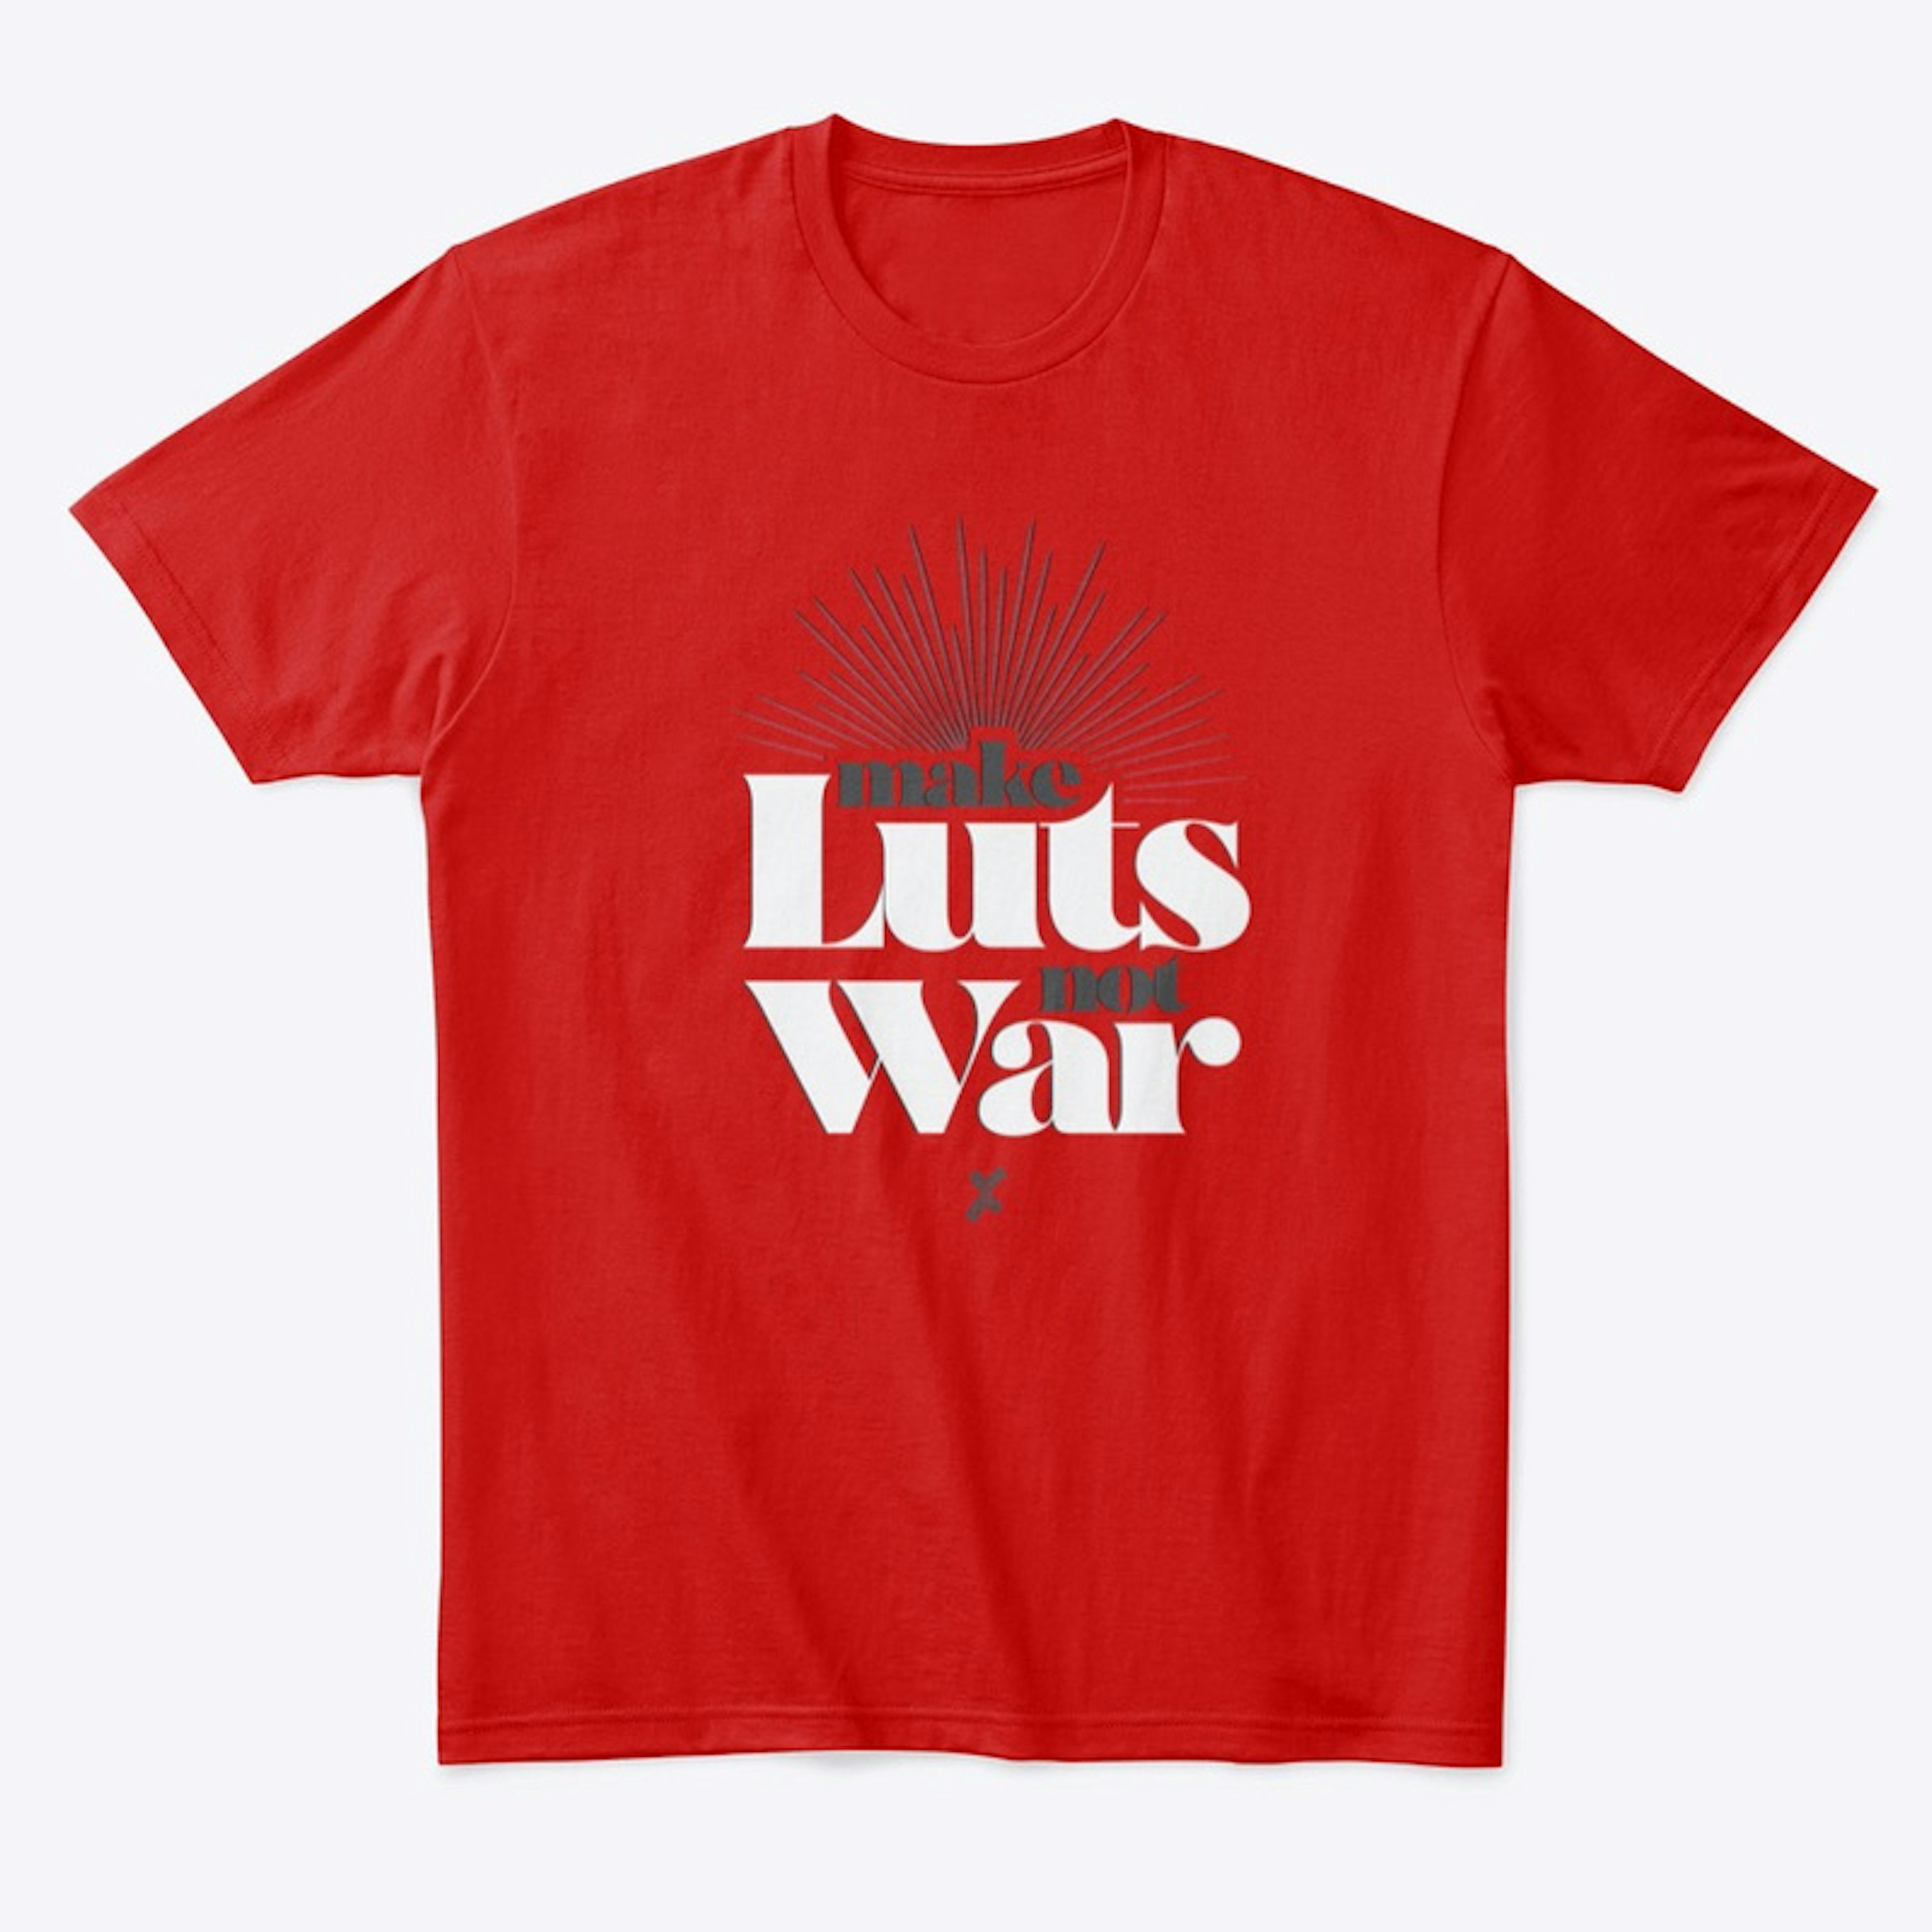 Make LUTs, Not War Tee